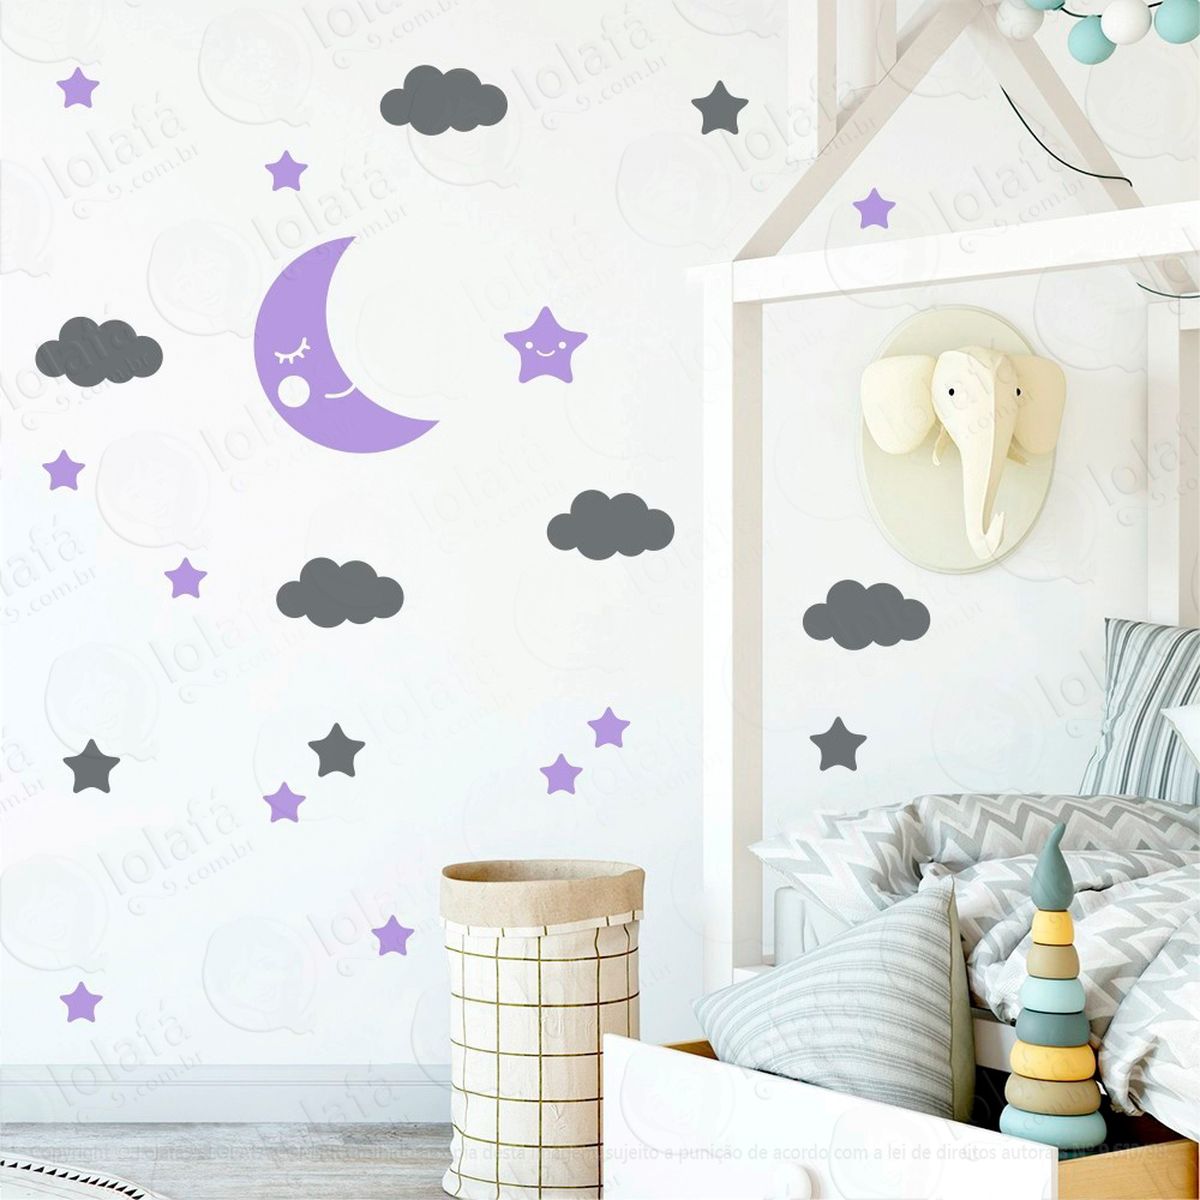 adesivos lua nuvens e estrelas 62 peças adesivos para quarto de bebê infantil - mod:630